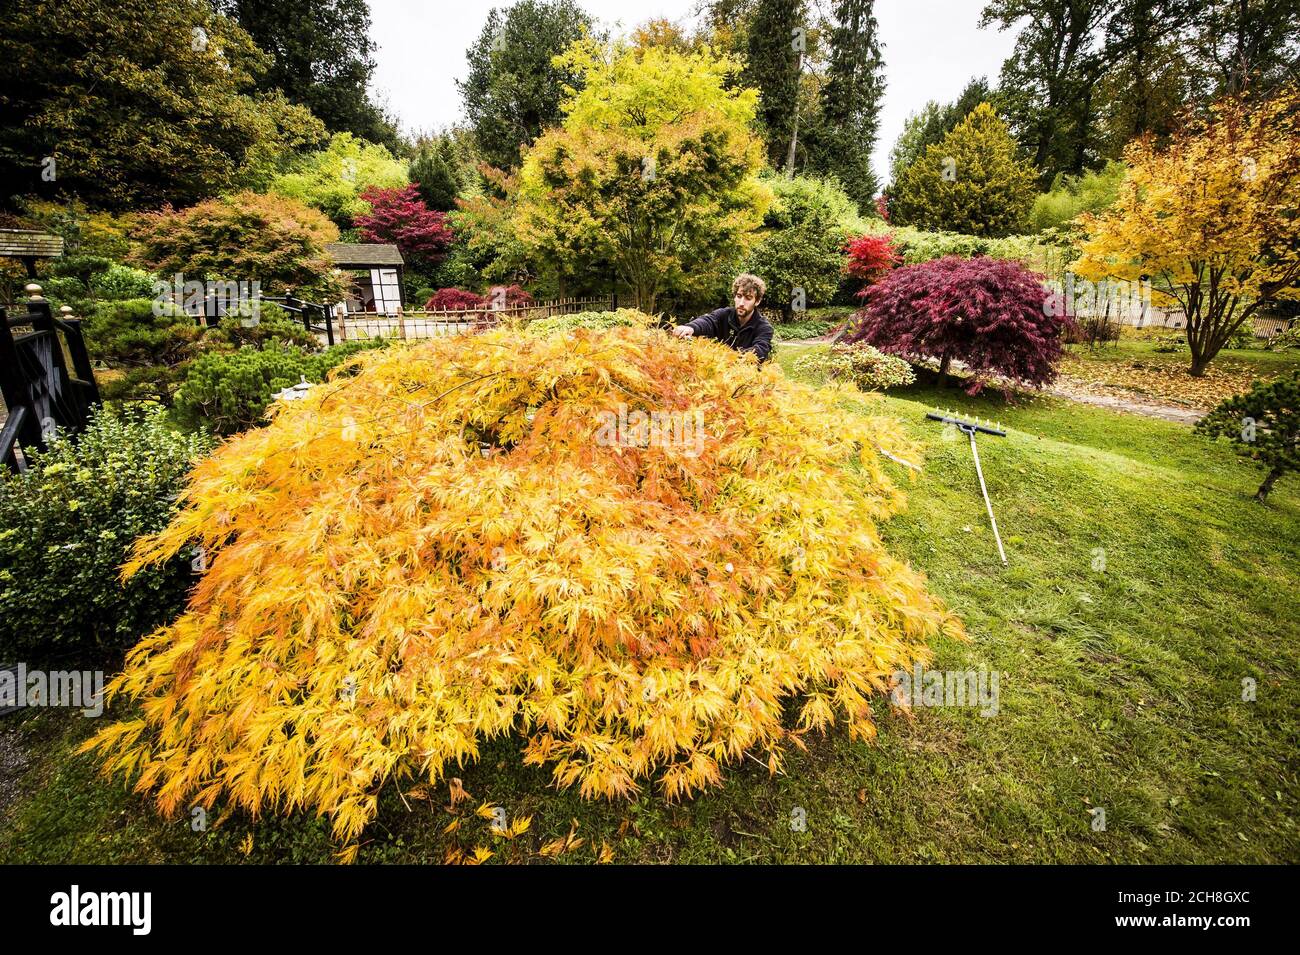 Gardner ed Edge pota un albero Acer giapponese nei Tea Gardens del National Trust Kingston Lacy House Gardens, dove lunghi giorni di tempo luminoso e soleggiato durante il mese di ottobre hanno portato a cambiamenti drammatici di foglie e colori creando una spettacolare esposizione autunnale. Foto Stock